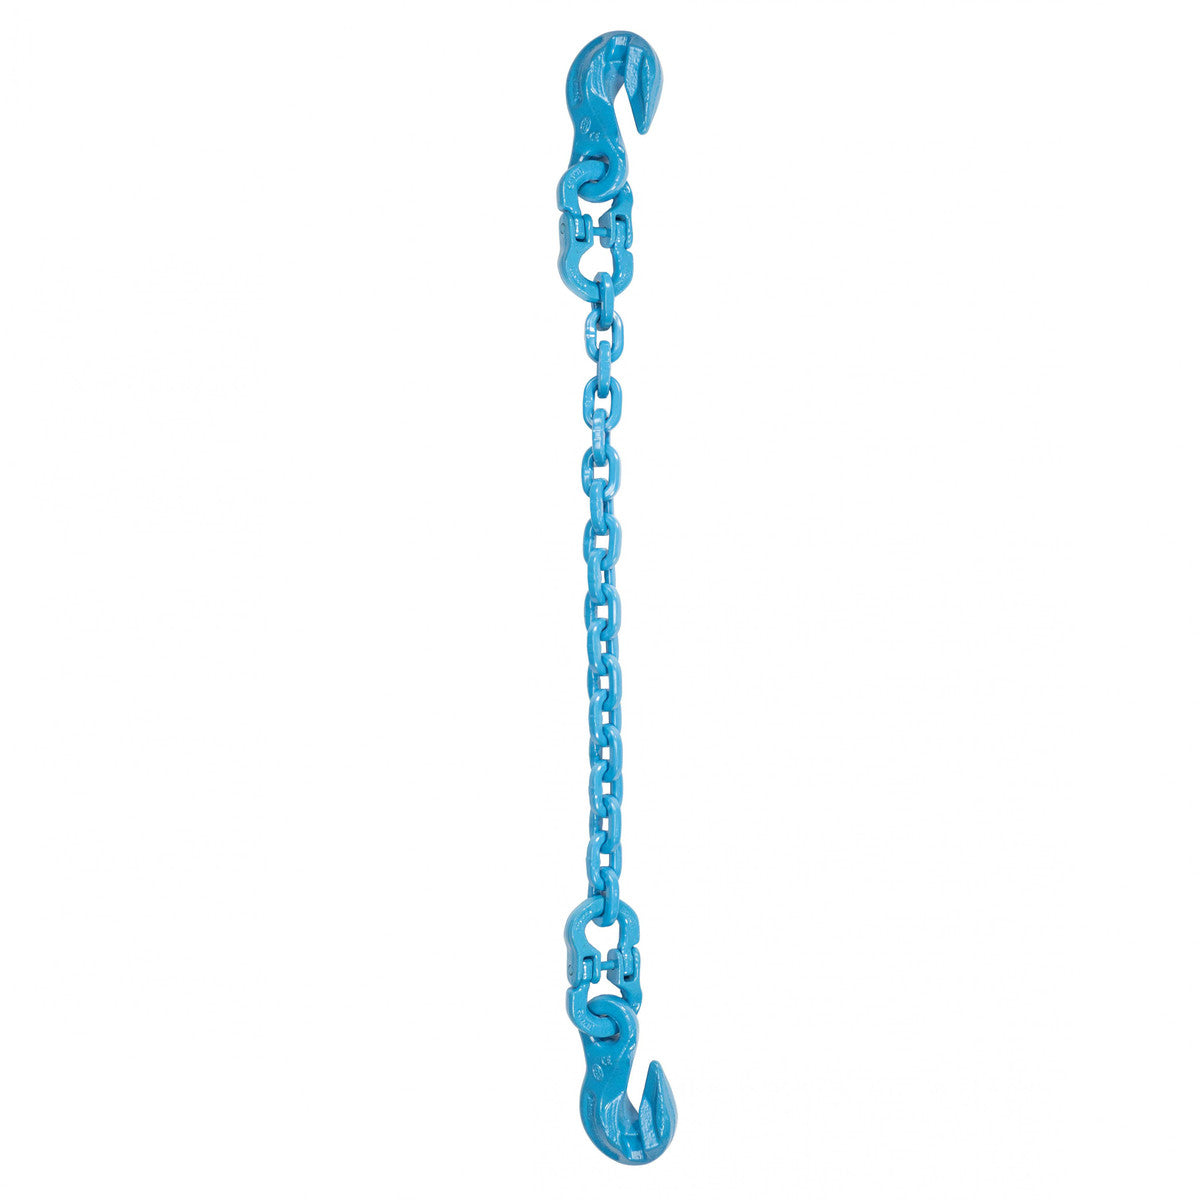 3/8" x 16' - Pewag Single Leg Chain Sling w/ Grab & Grab Hooks - Grade 120